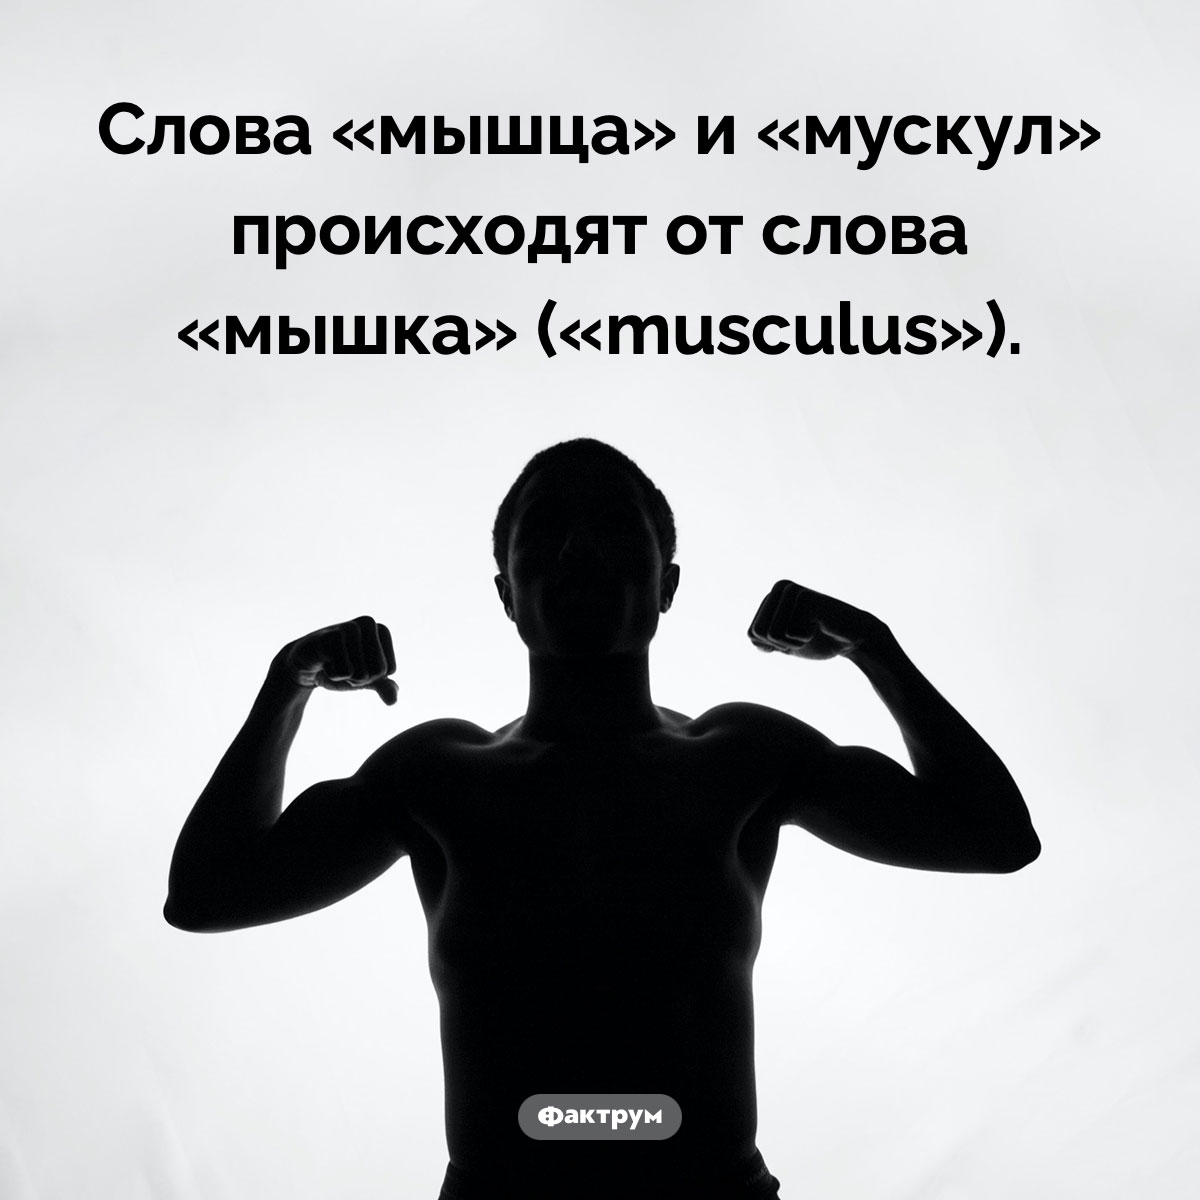 Происхождение слов «мышца» и «мускул». Слова «мышца» и «мускул» происходят от слова «мышка» («musculus»).